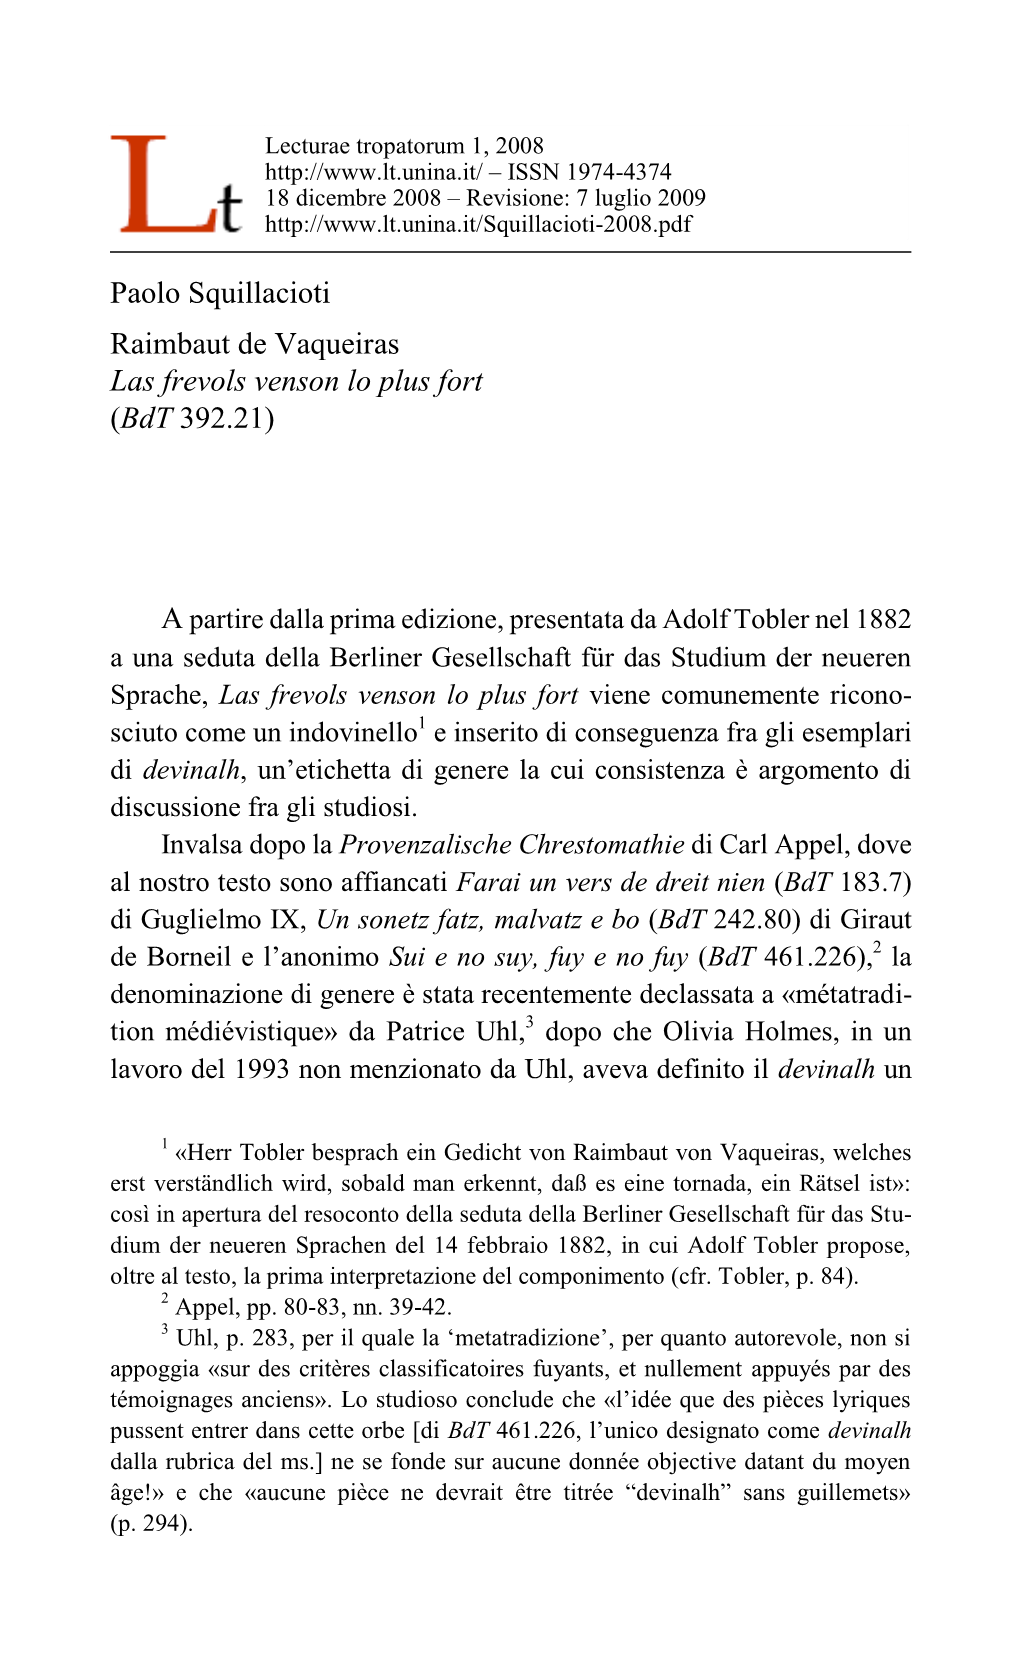 Paolo Squillacioti Raimbaut De Vaqueiras Las Frevols Venson Lo Plus Fort (Bdt 392.21)